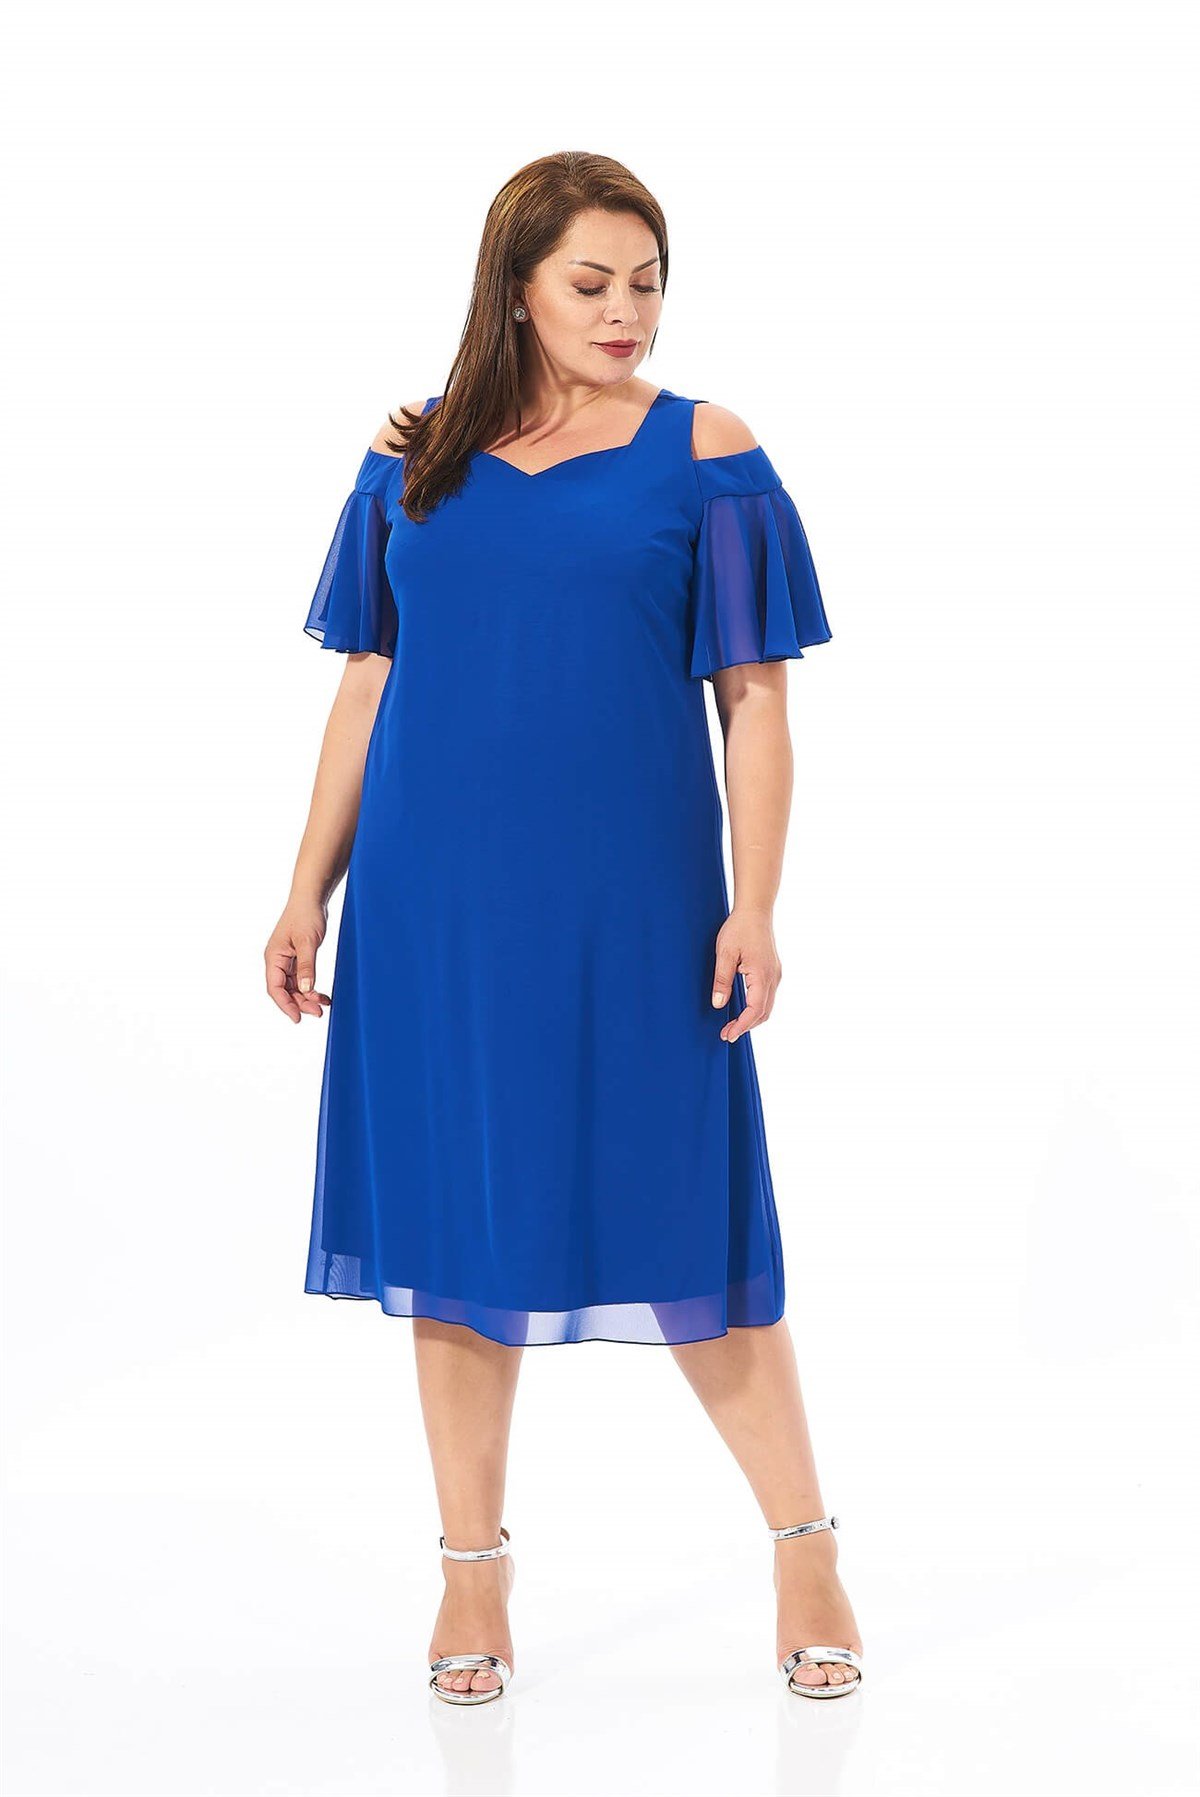 Büyük Beden Saks Mavisi Renkli Omuz Detaylı Şifon Elbise - LilasXXL